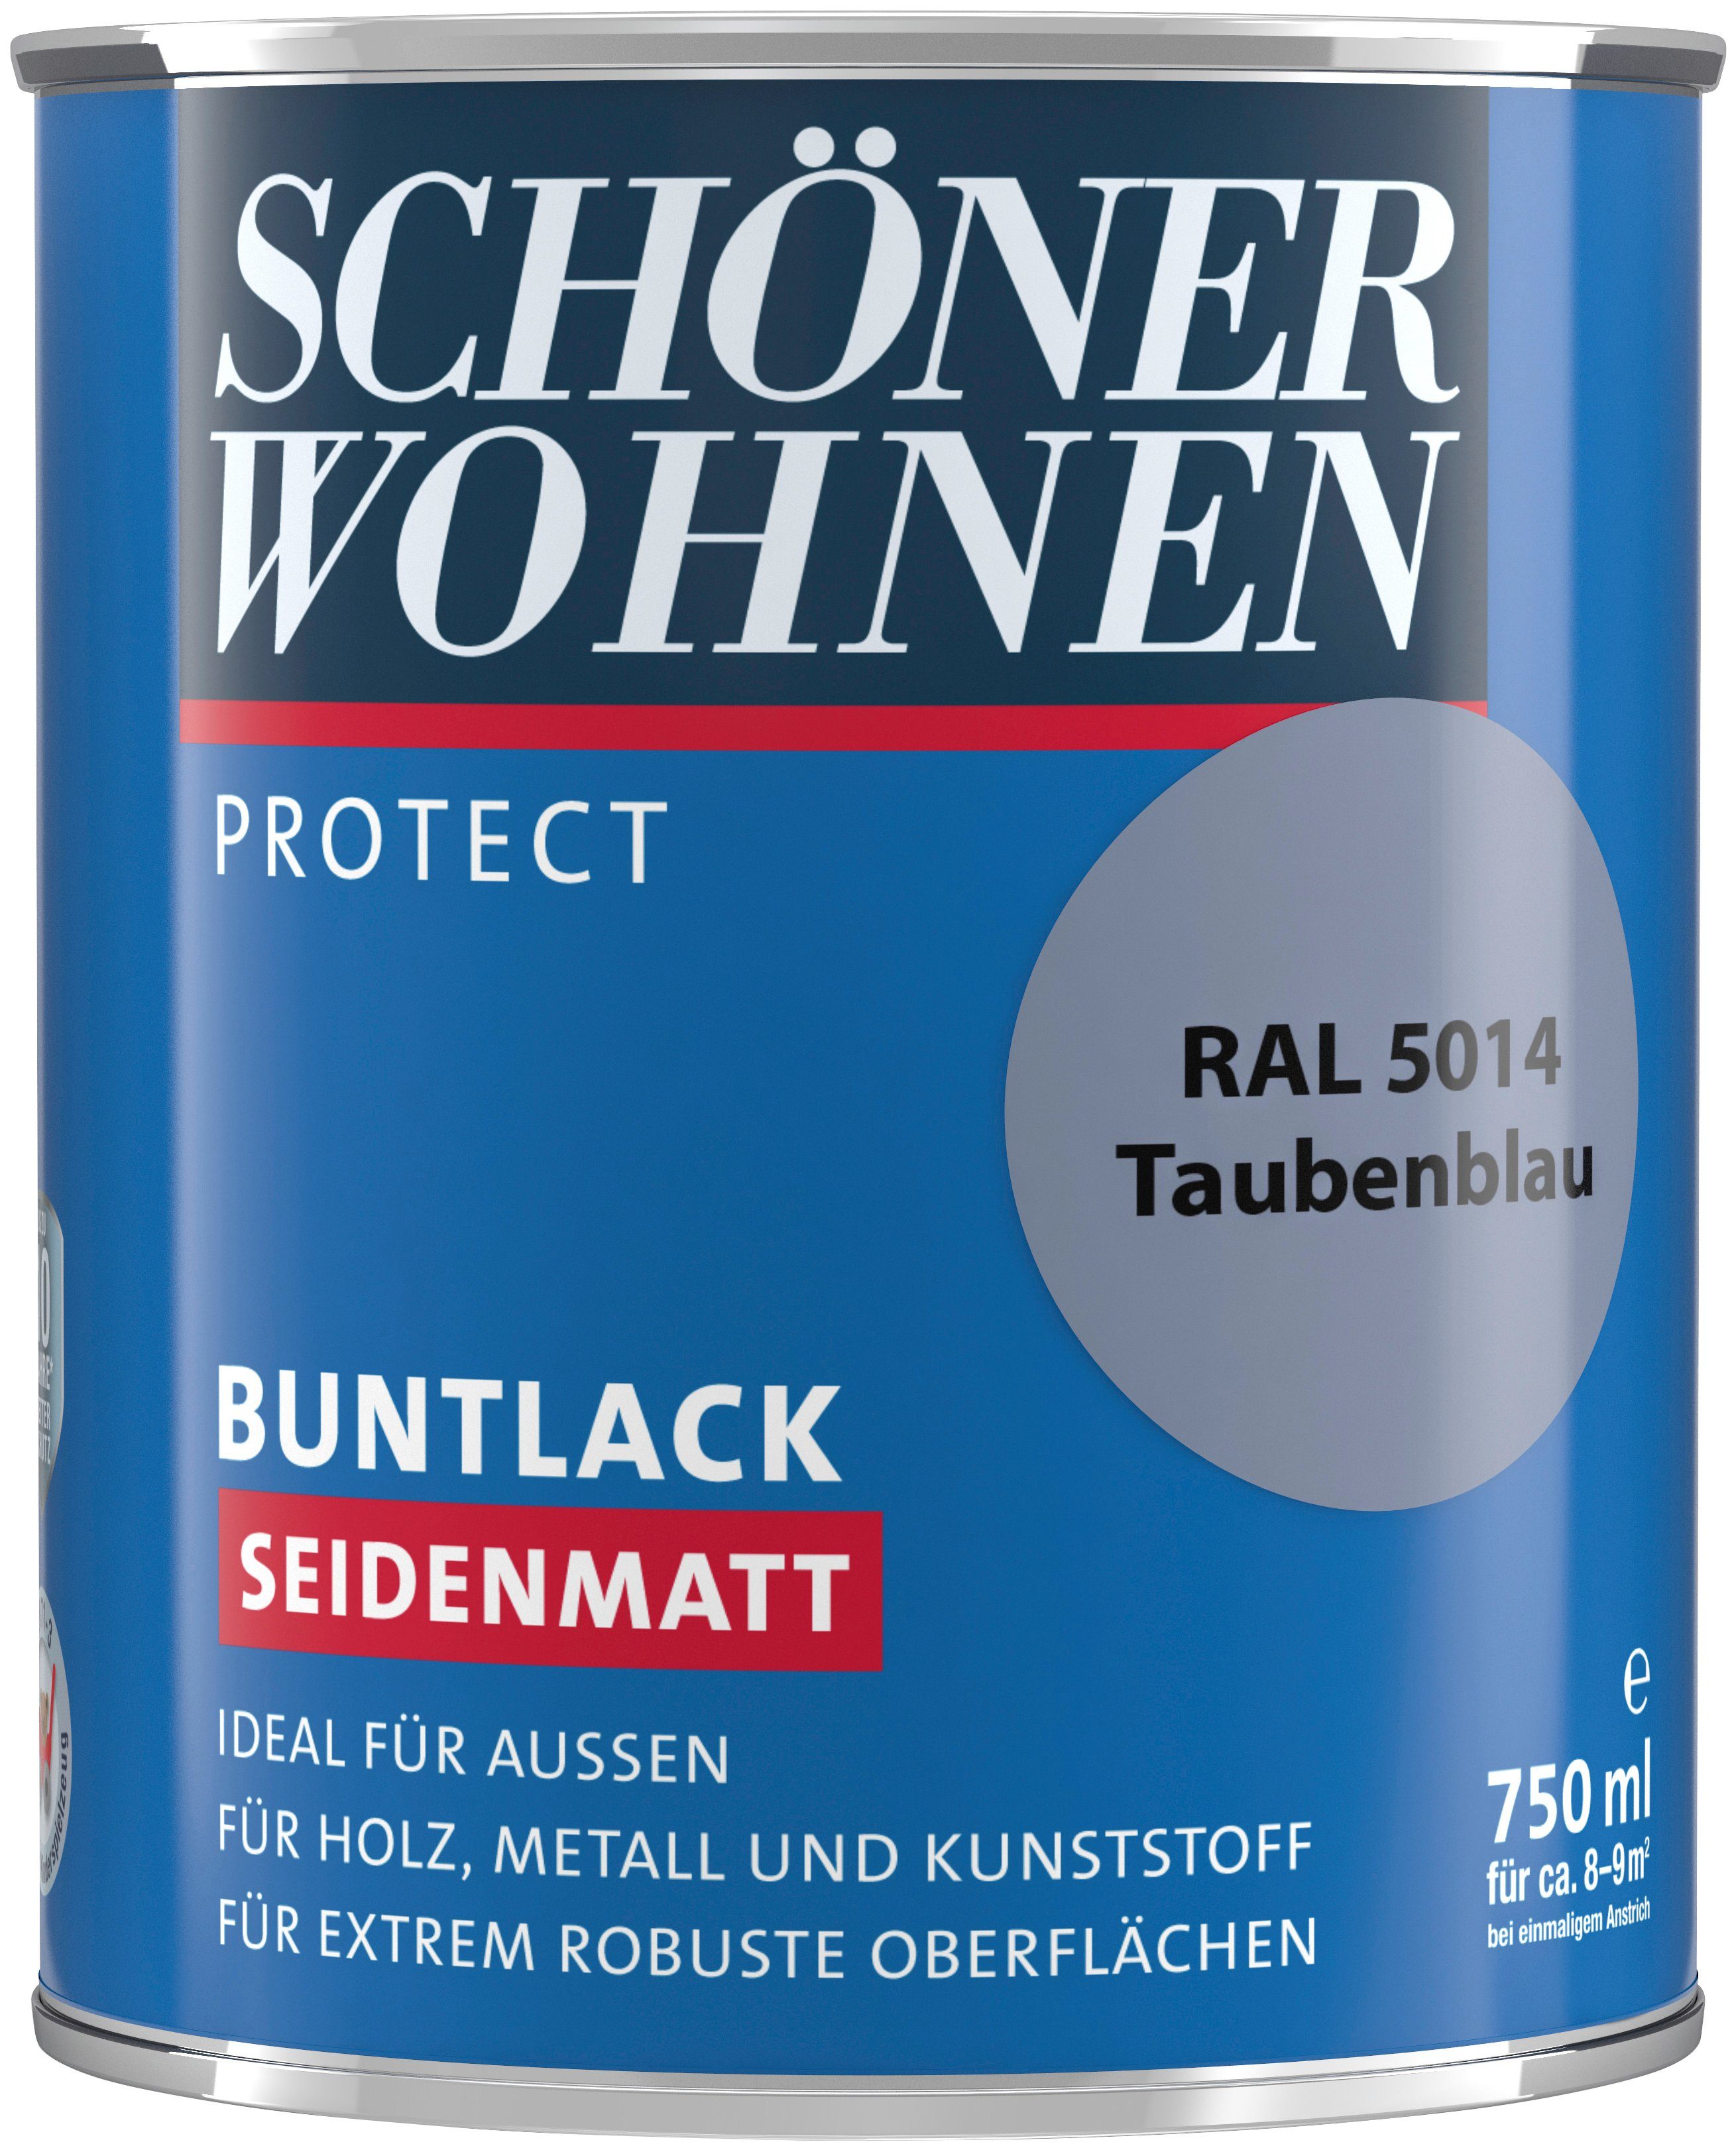 SCHÖNER Buntlack, ml, RAL außen ideal seidenmatt, Protect WOHNEN 750 5014, Lack für taubenblau FARBE